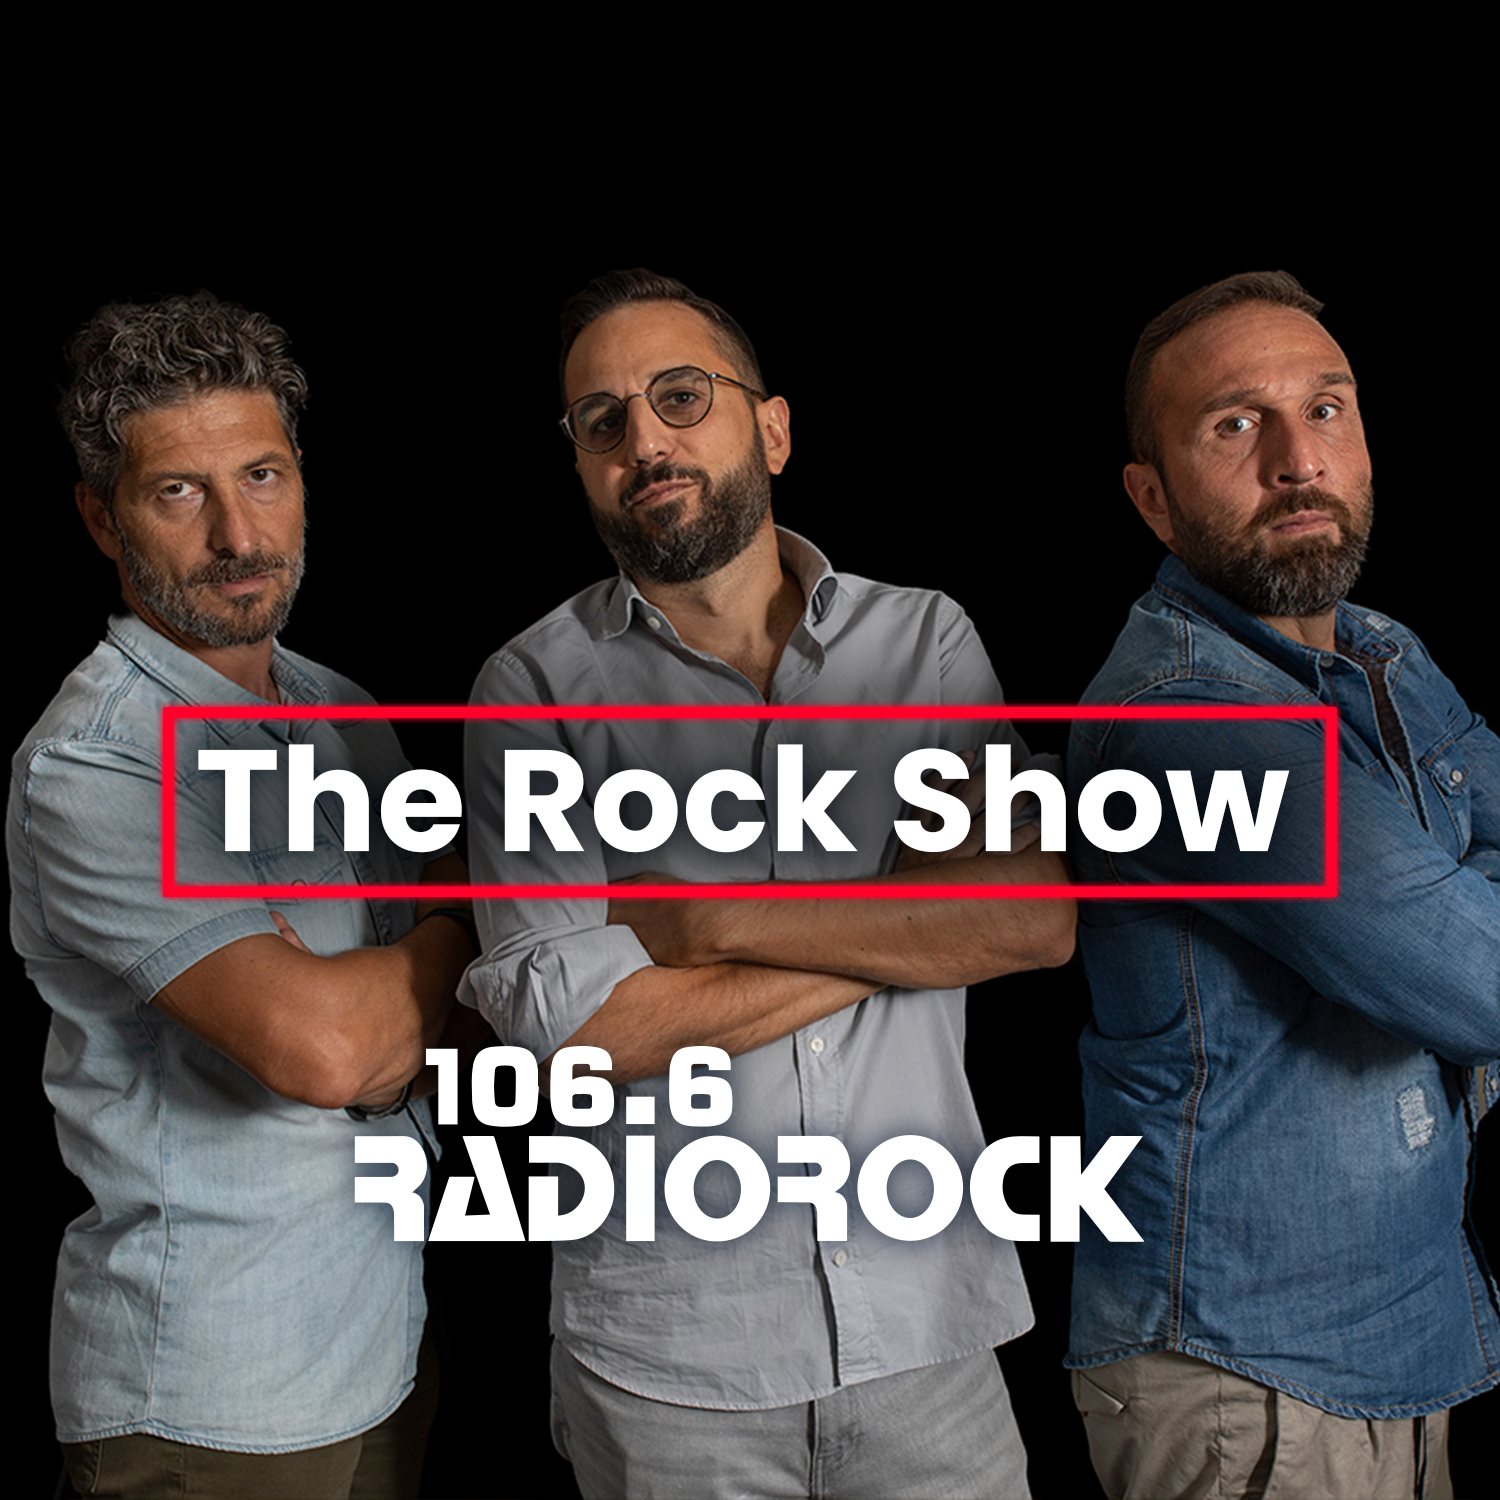 The Rock Show - S07E021: Band di destra e di sinistra. (02-10-23)